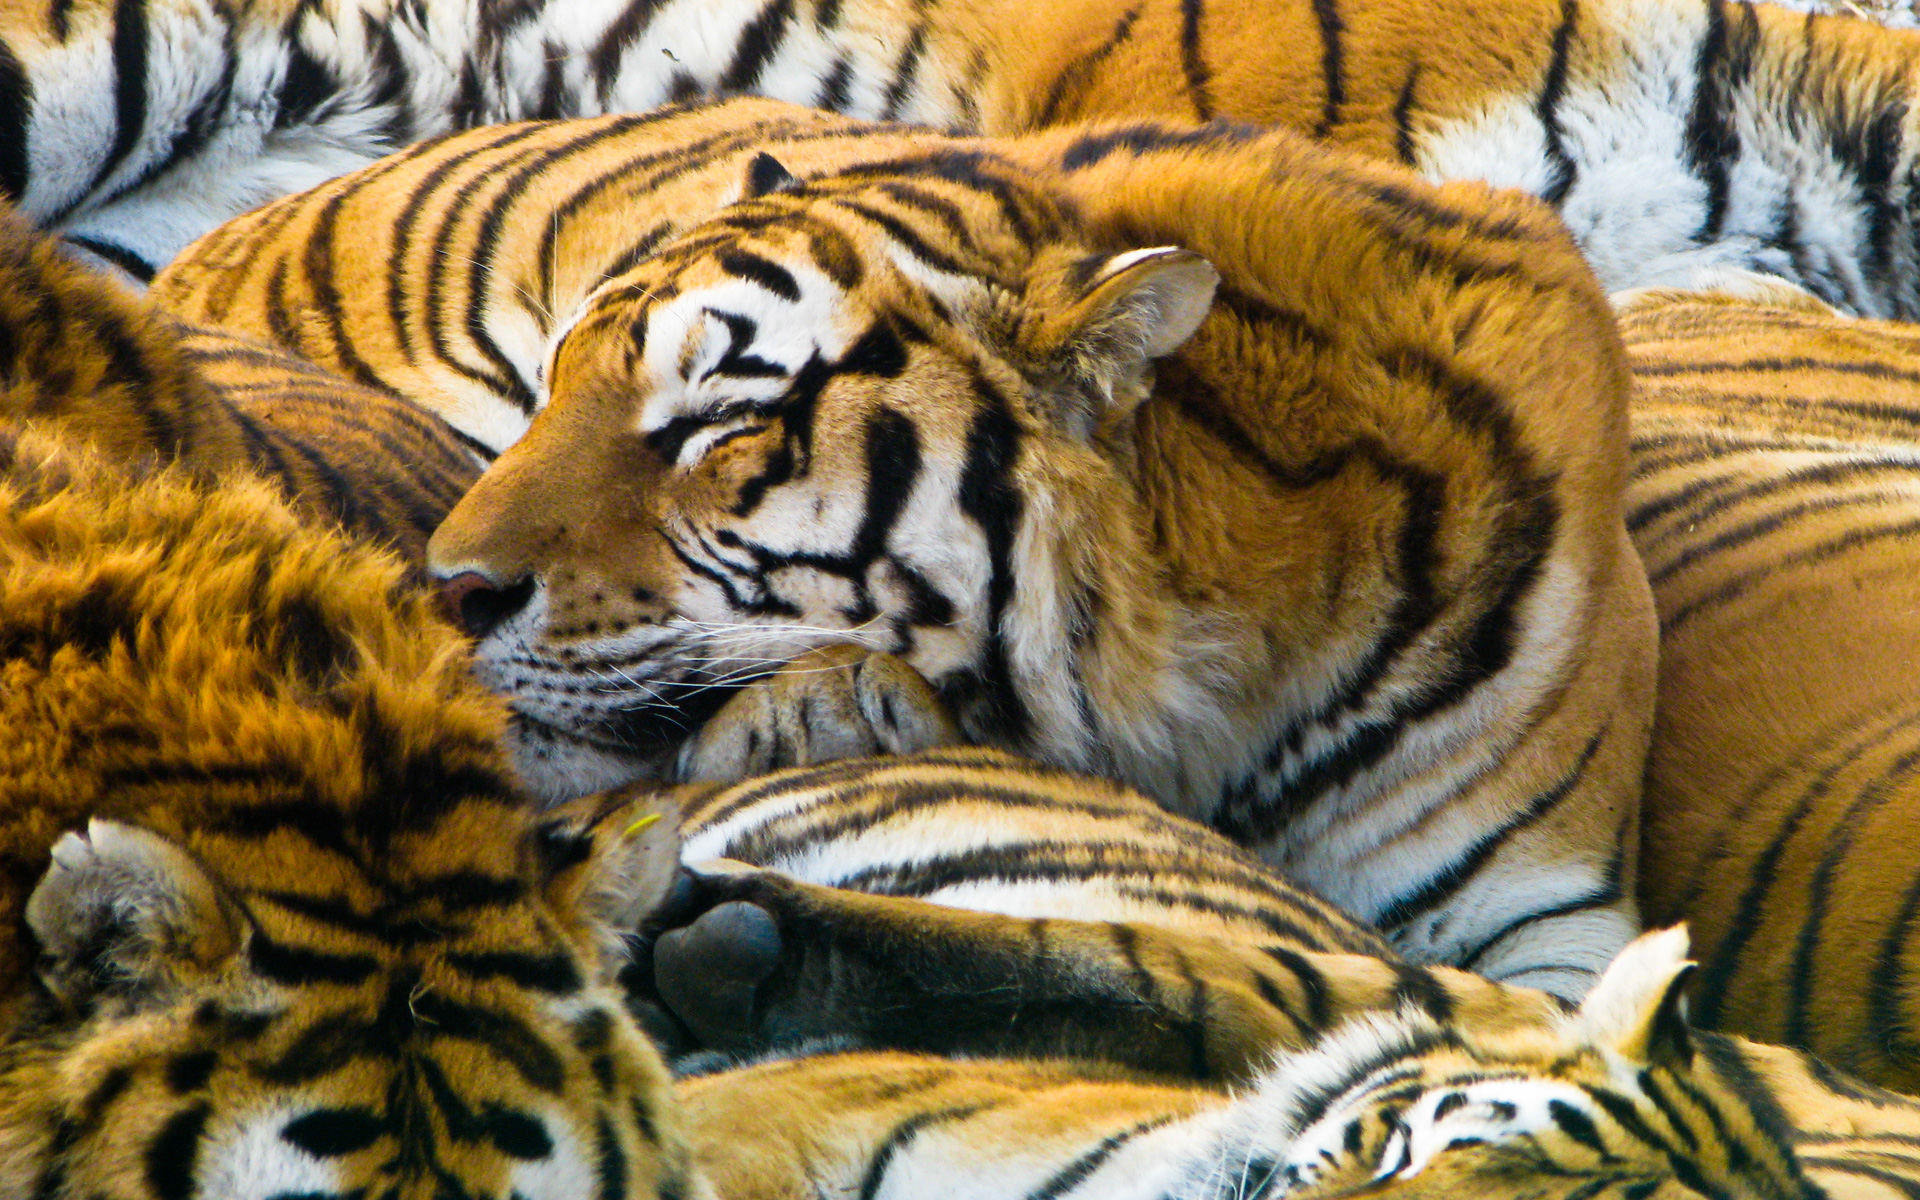 Sleeping Tigers7321497 - Sleeping Tigers - tigers, Sleeping, Dove